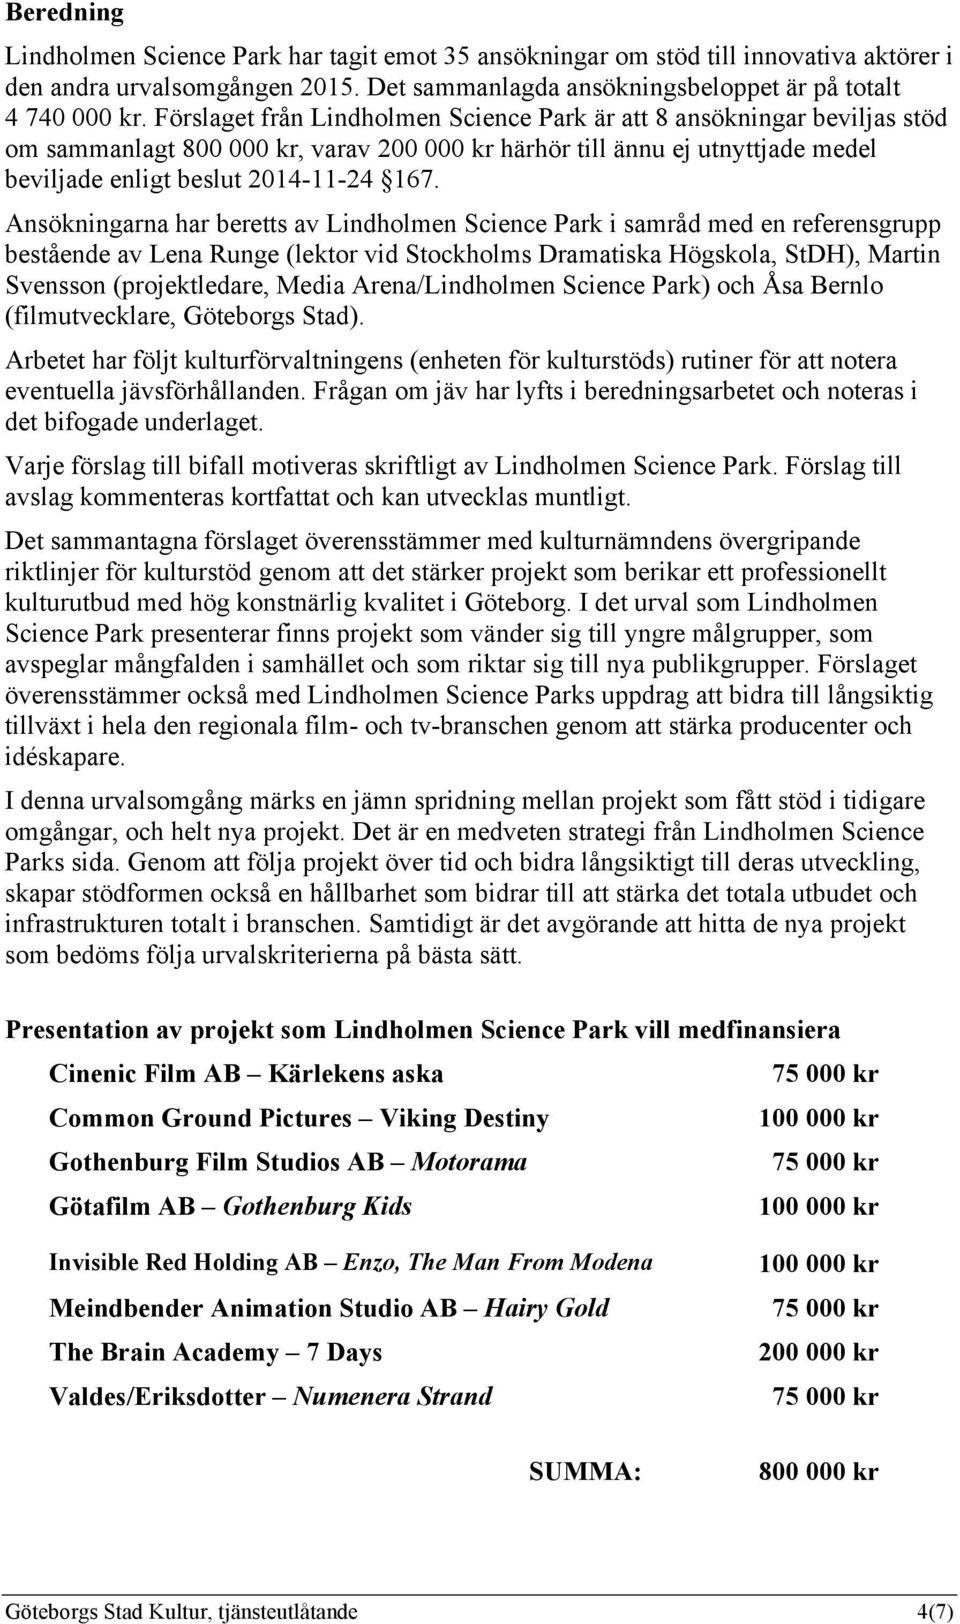 Ansökningarna har beretts av Lindholmen Science Park i samråd med en referensgrupp bestående av Lena Runge (lektor vid Stockholms Dramatiska Högskola, StDH), Martin Svensson (projektledare, Media